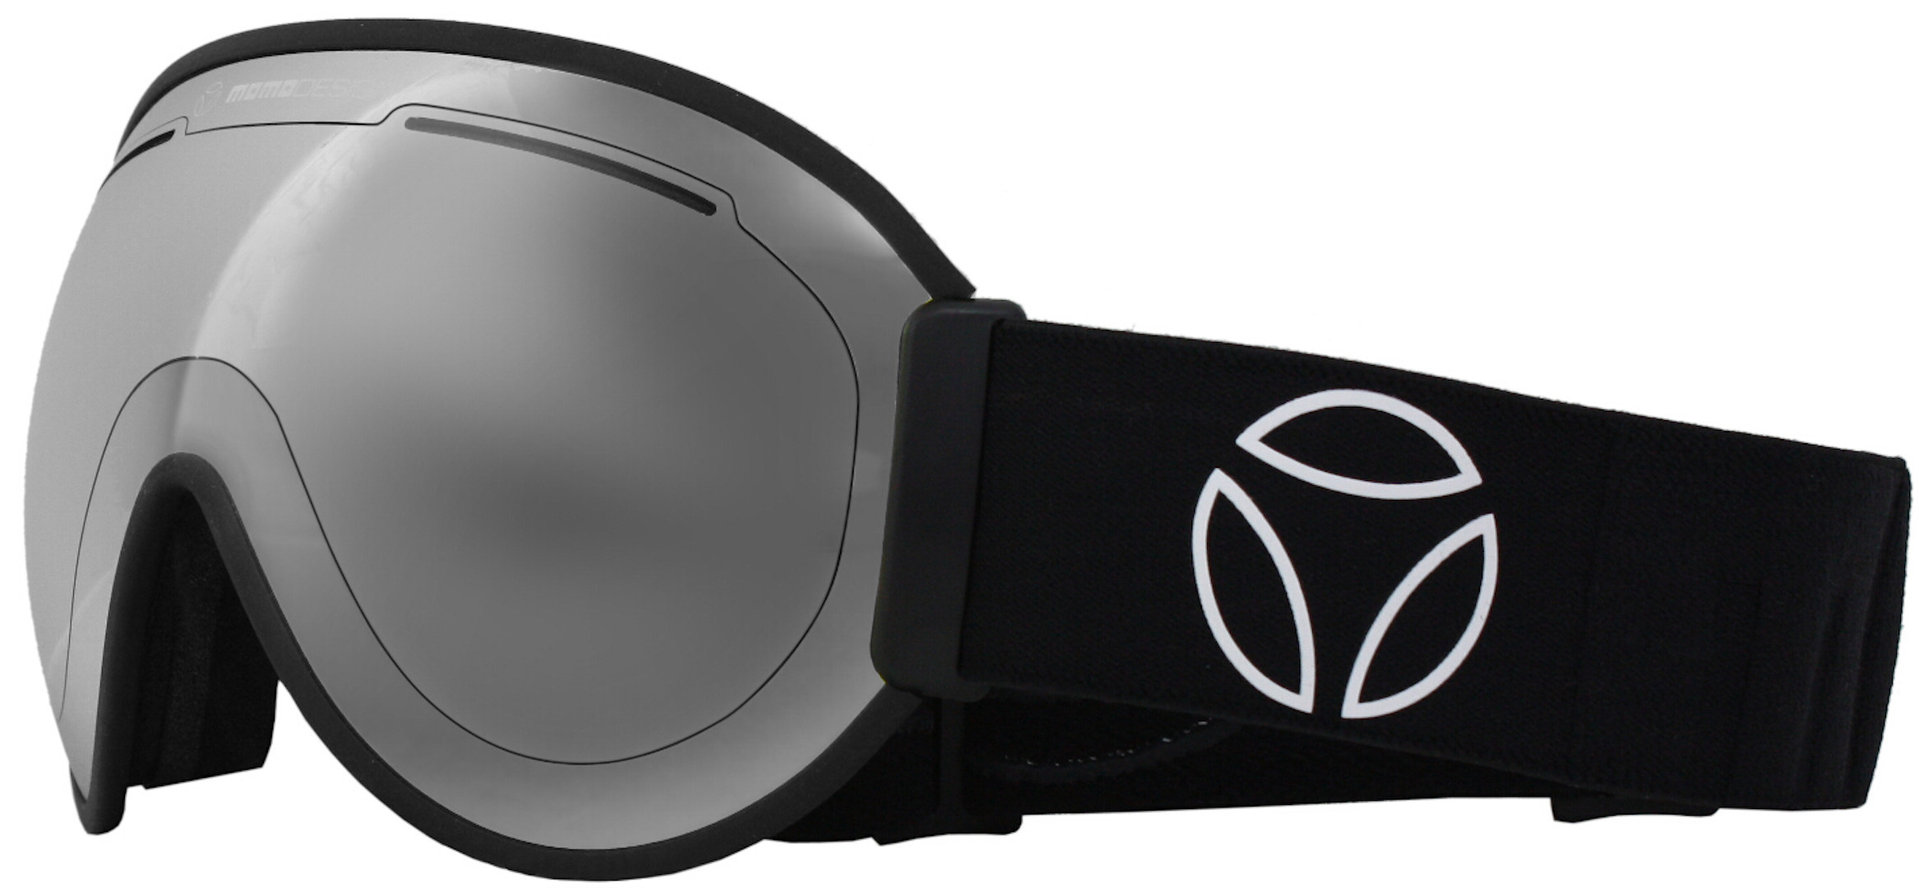  Falcon Ski Goggles, black, black, Size One Size